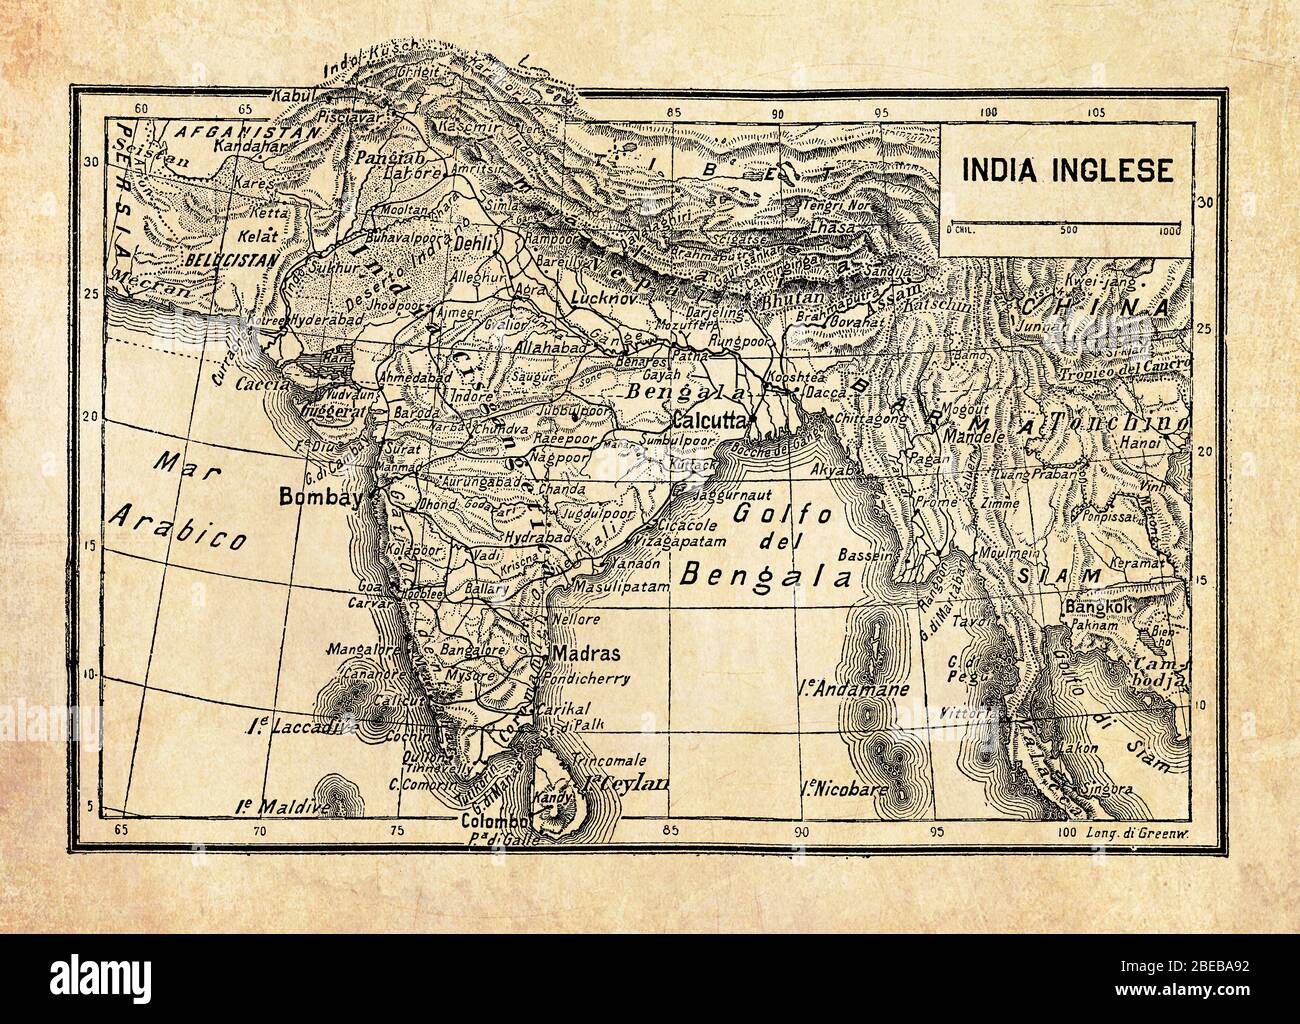 Alte Karte des Britischen Reiches in Indien oder British Raj auf dem indischen Subkontinent, gebildet von Indien, Pakistan und Bangladesch mit geographischen italienischen Namen und Beschreibungen Stockfoto